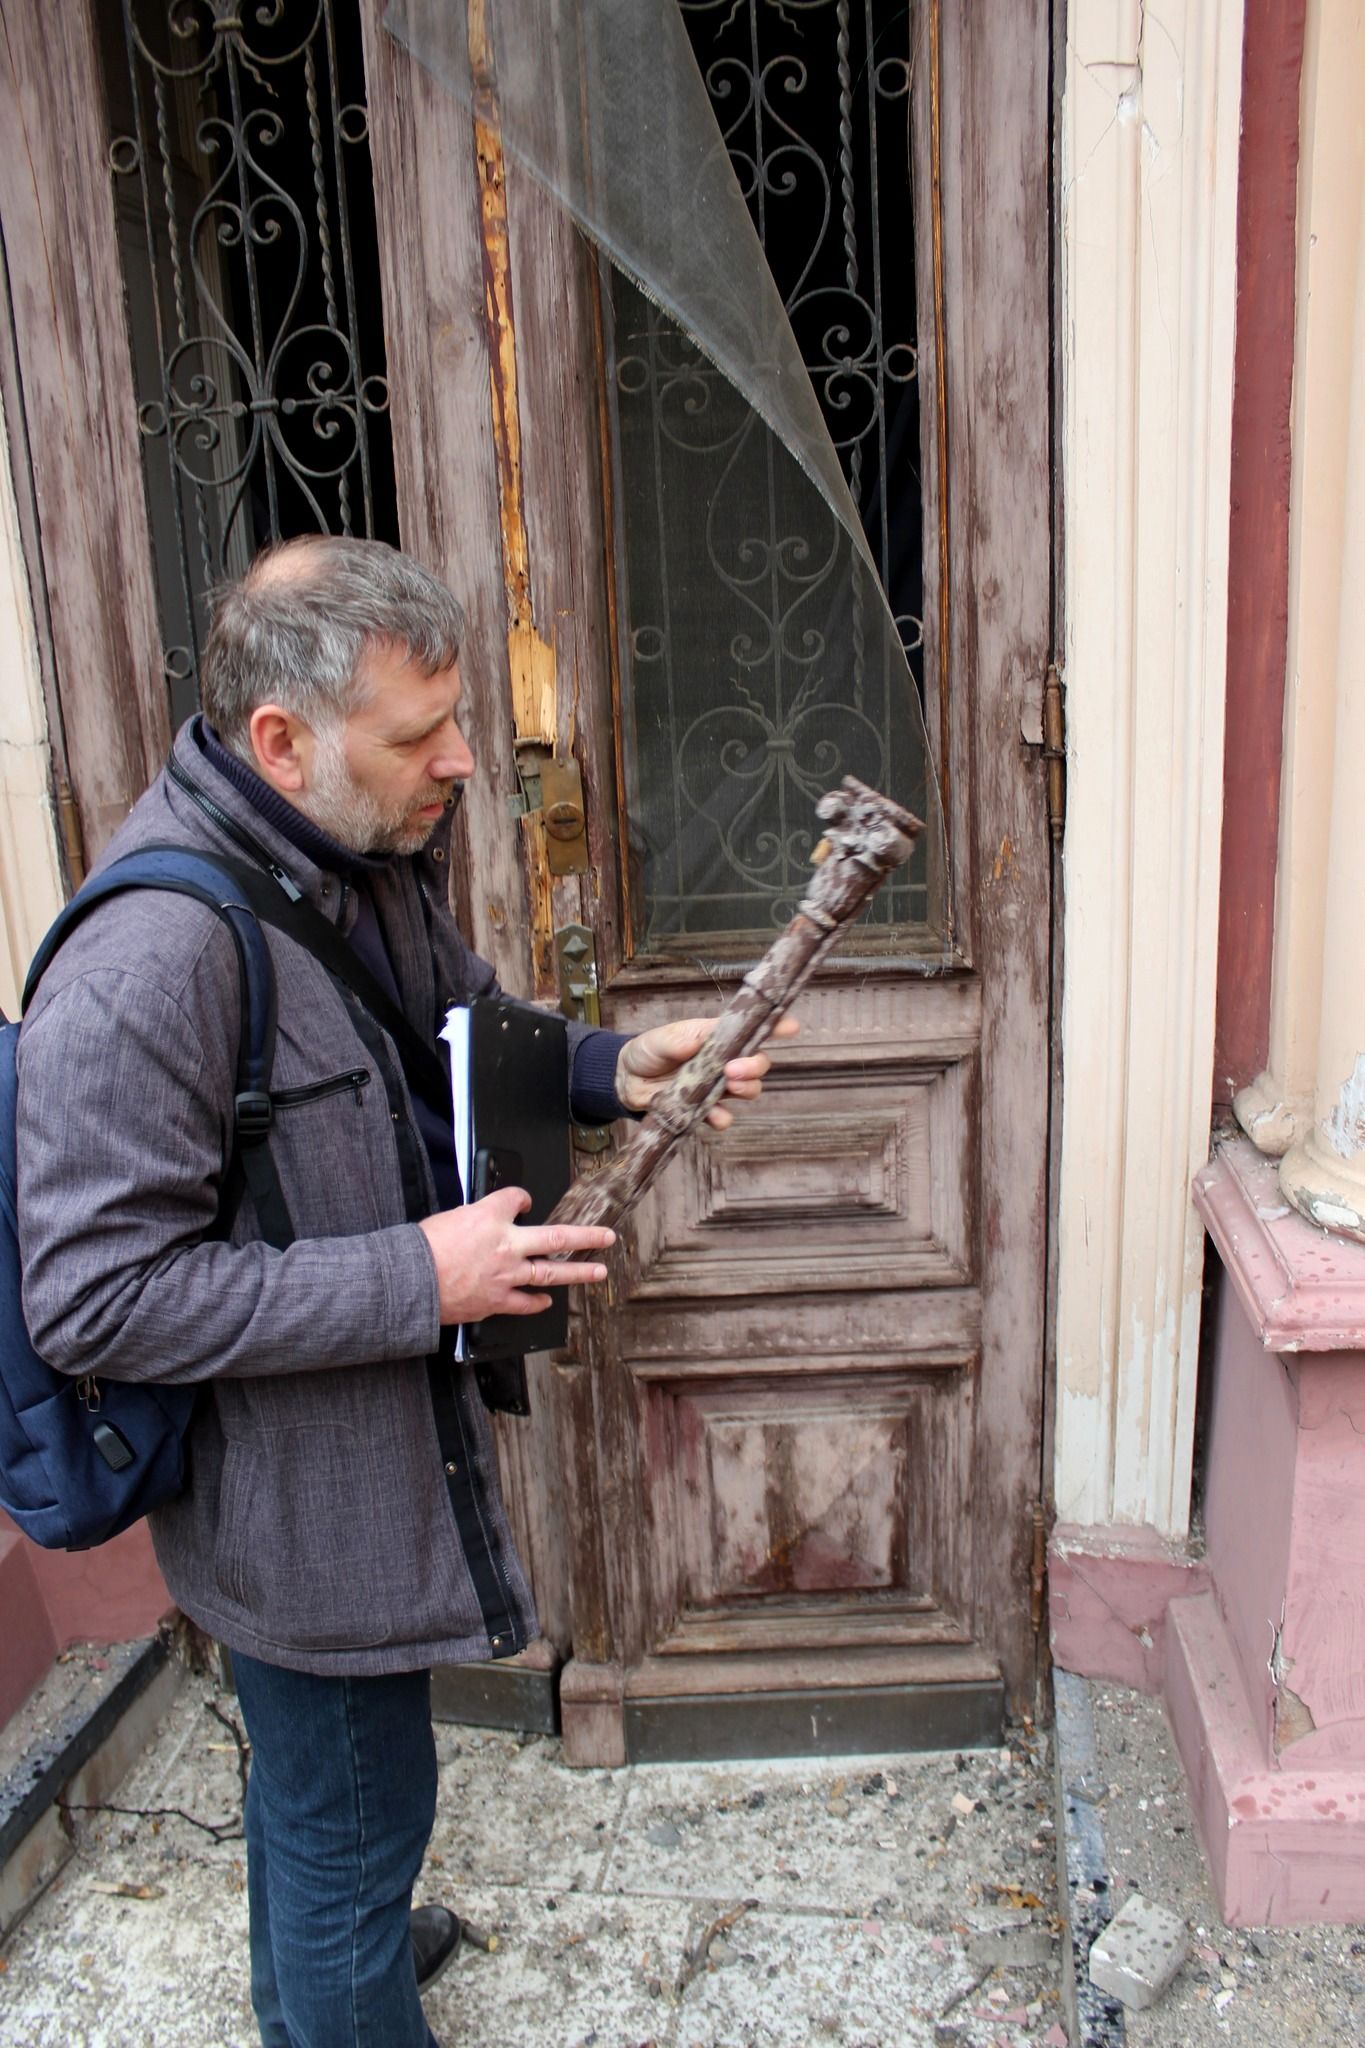 Керівник експедицій HeMo Іван Щурко обстежує понищену спадщину в Одесі (фото HeMo)